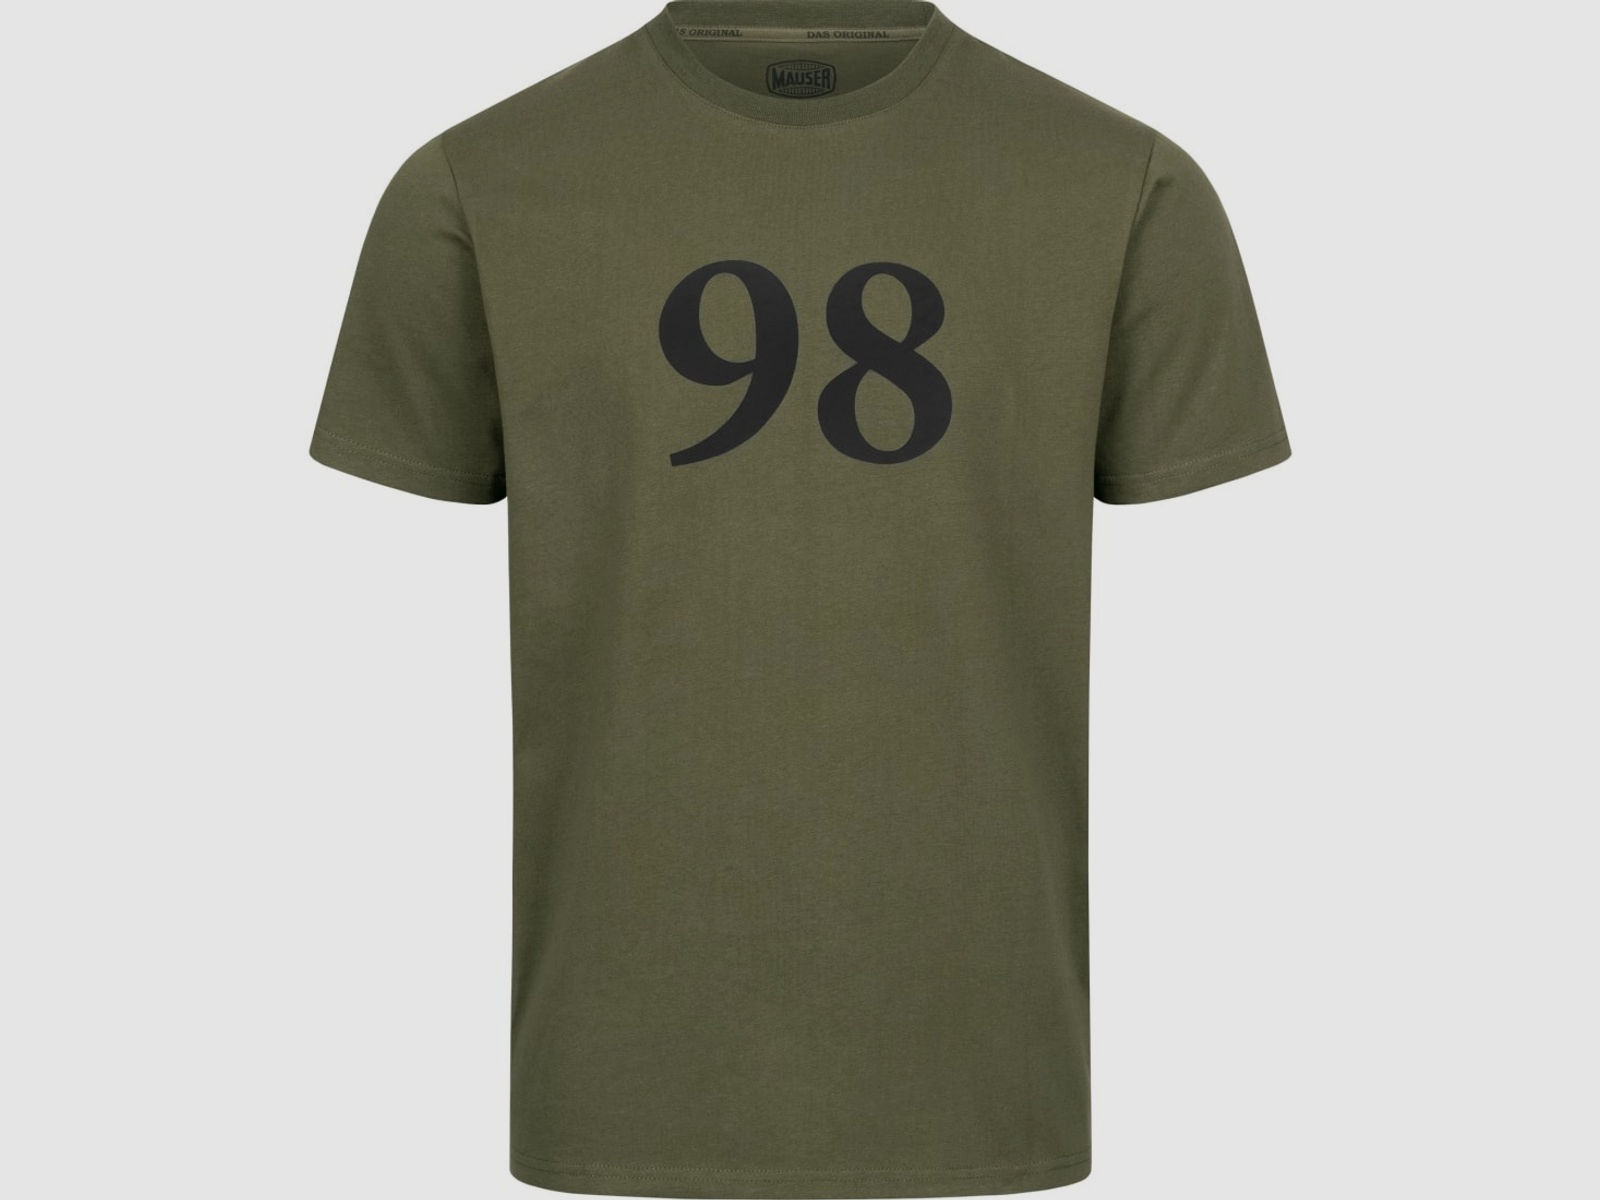 Mauser 98 Jubiläums-Shirt